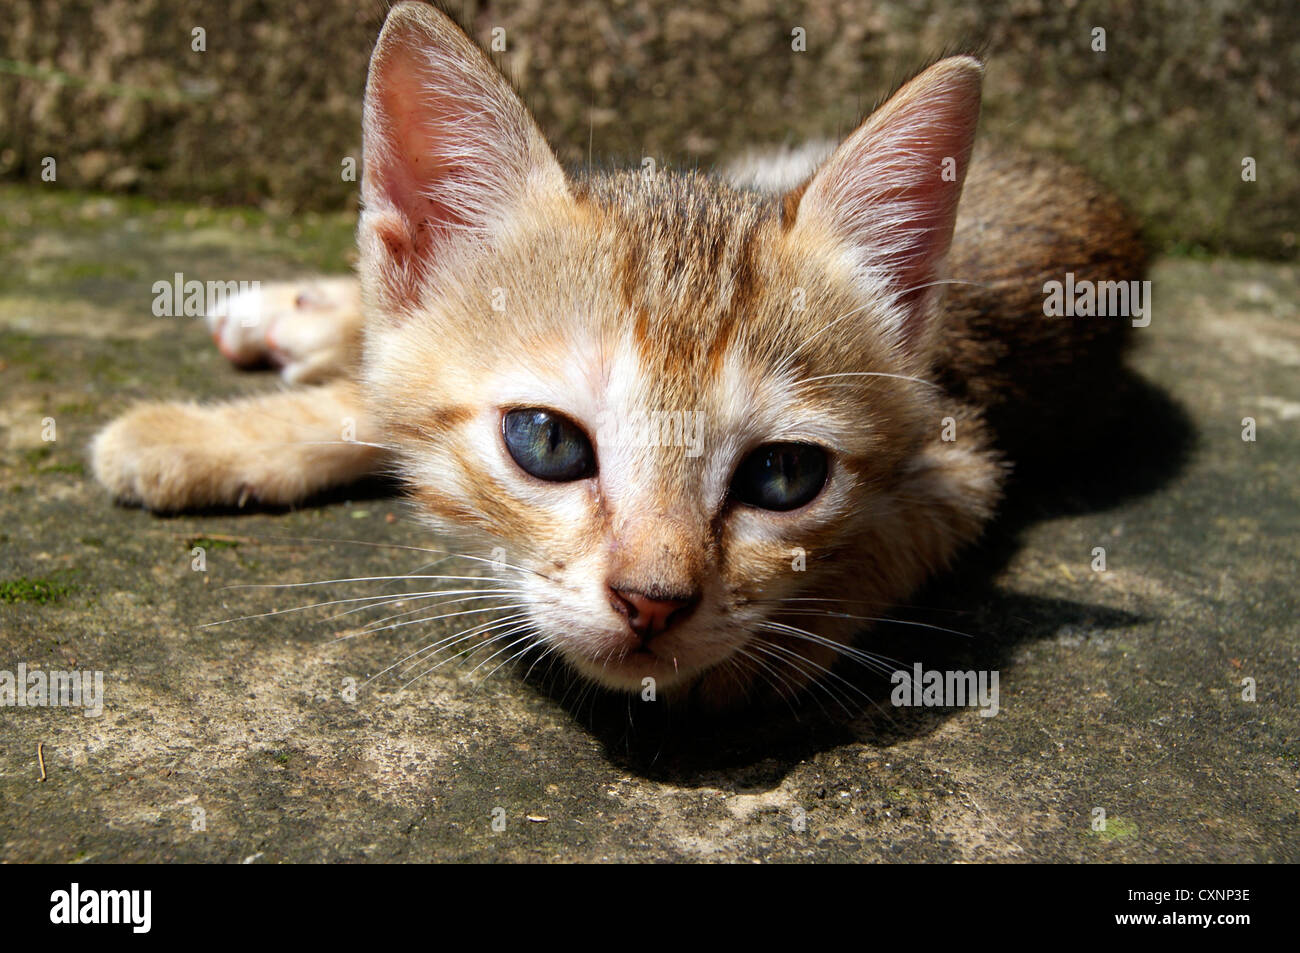 Small Kitten cat Looking on frame Stock Photo